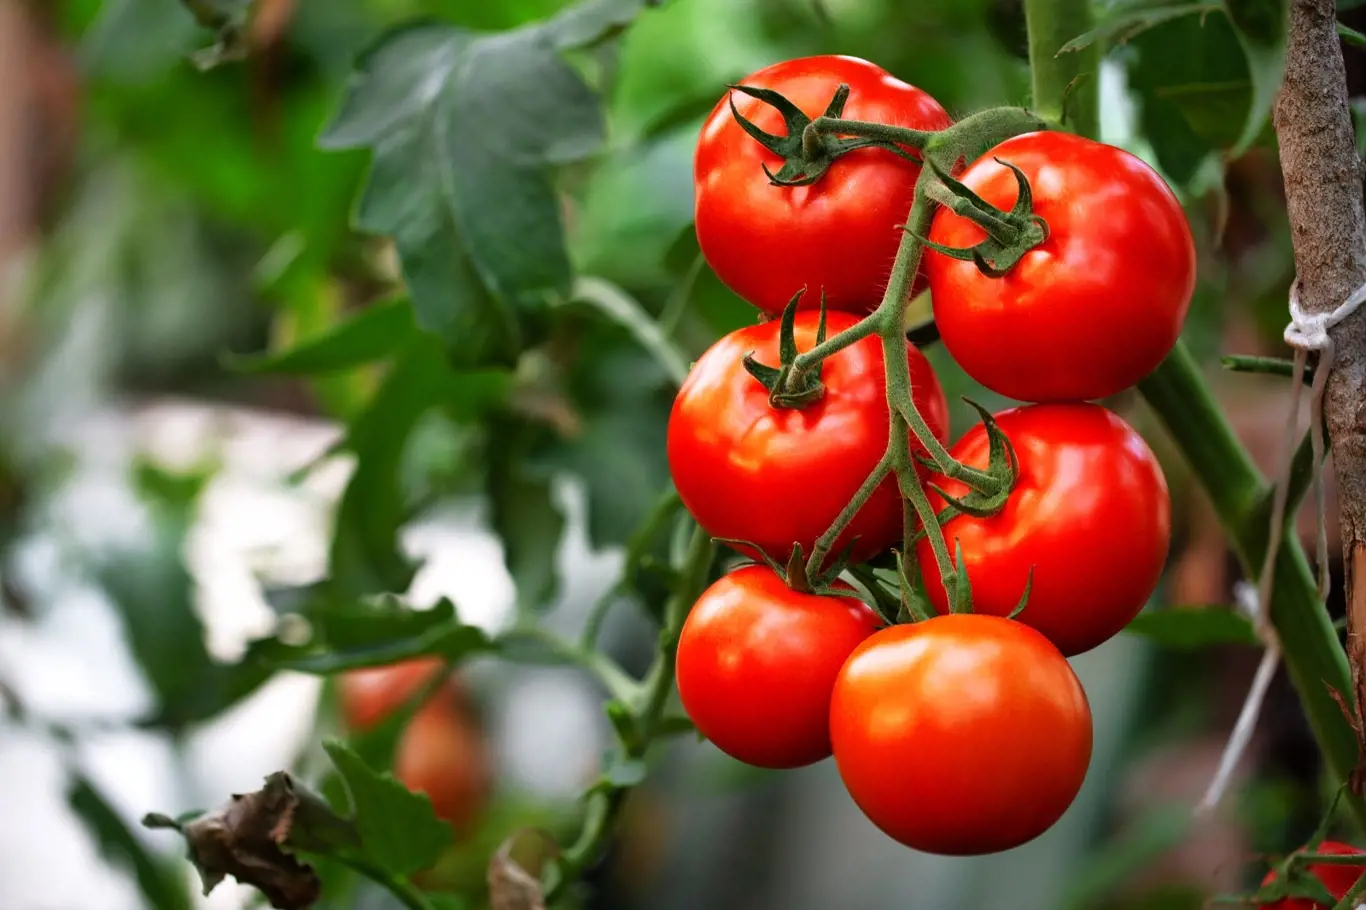 Sezóna pěstování rajčat je právě na startu.